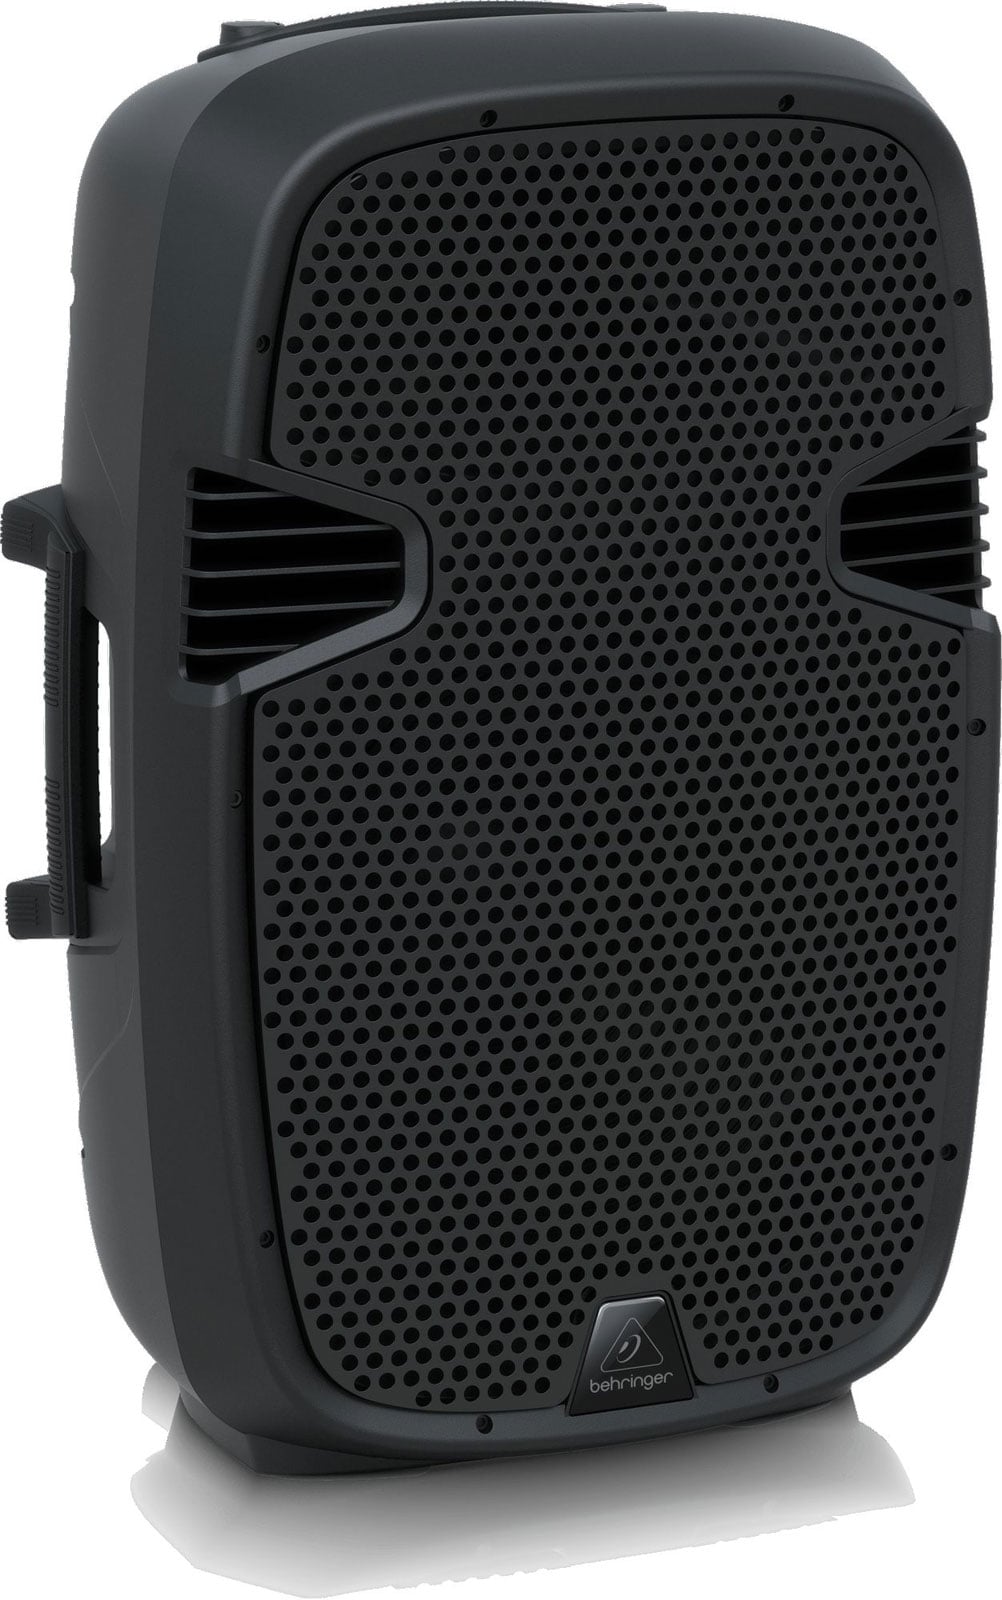 Haut-parleurs d′ordinateur - 1.2 W - Noir - USB - Paire - Réusiné